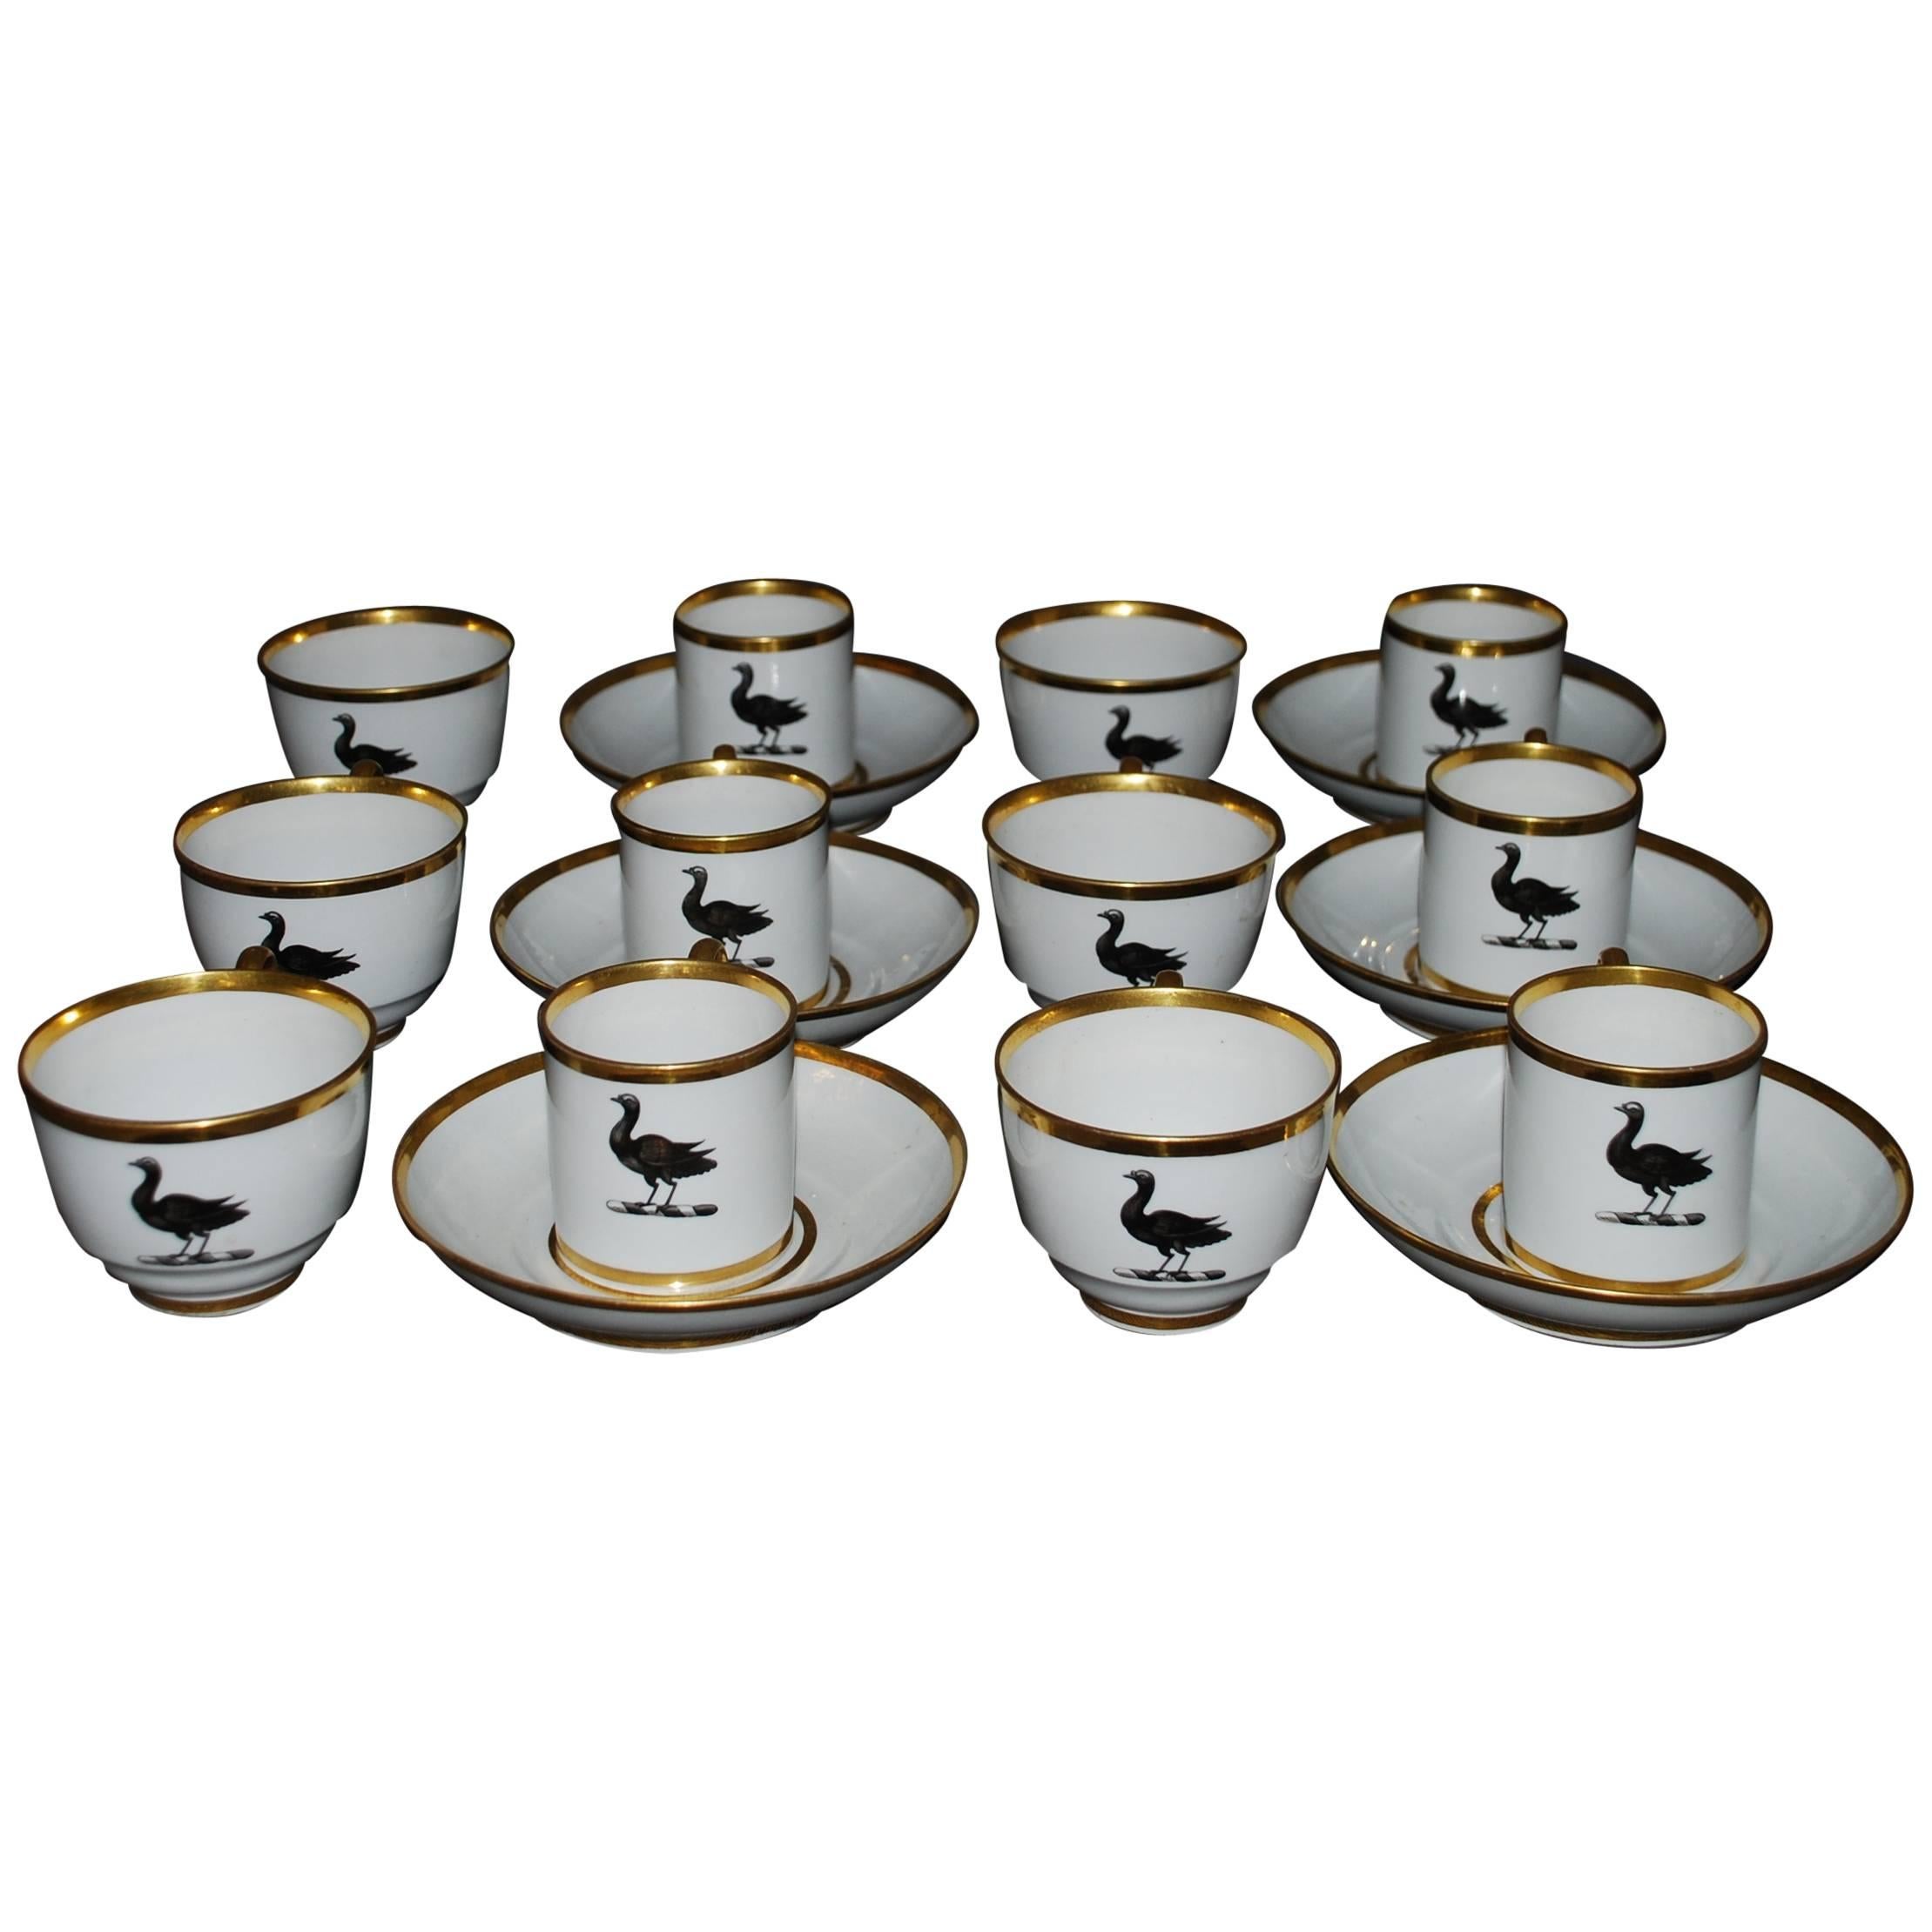 Set aus sechs Teetassen mit Vögeln aus Porzellan. Auffallend modern aussehendes antikes Set von sechs BFB Worcester Trios aus sechs Teetassen und sechs Kaffeetassen mit sechs geteilten Untertassen in eleganter Form in Weiß mit vergoldeten Rändern